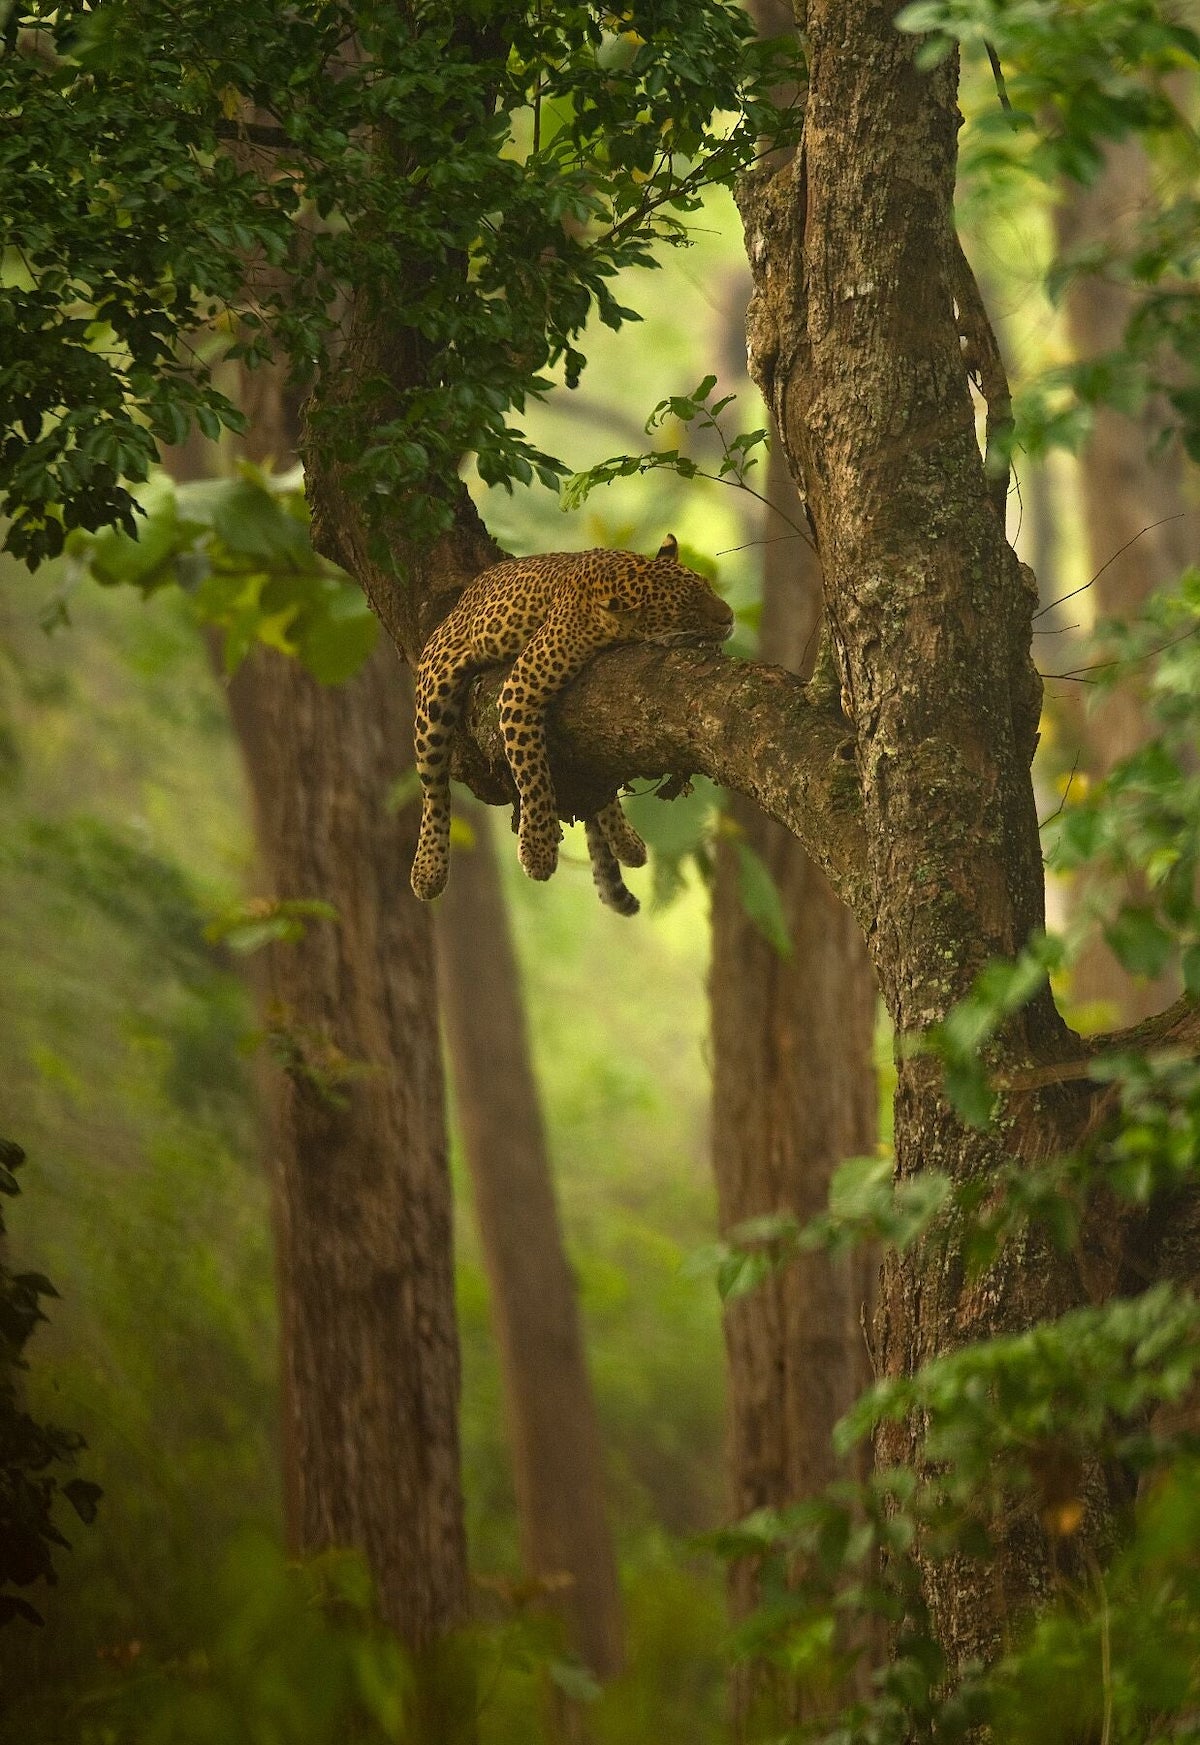 Leopard Sleeping in a Tree by Shivaram Sudhir